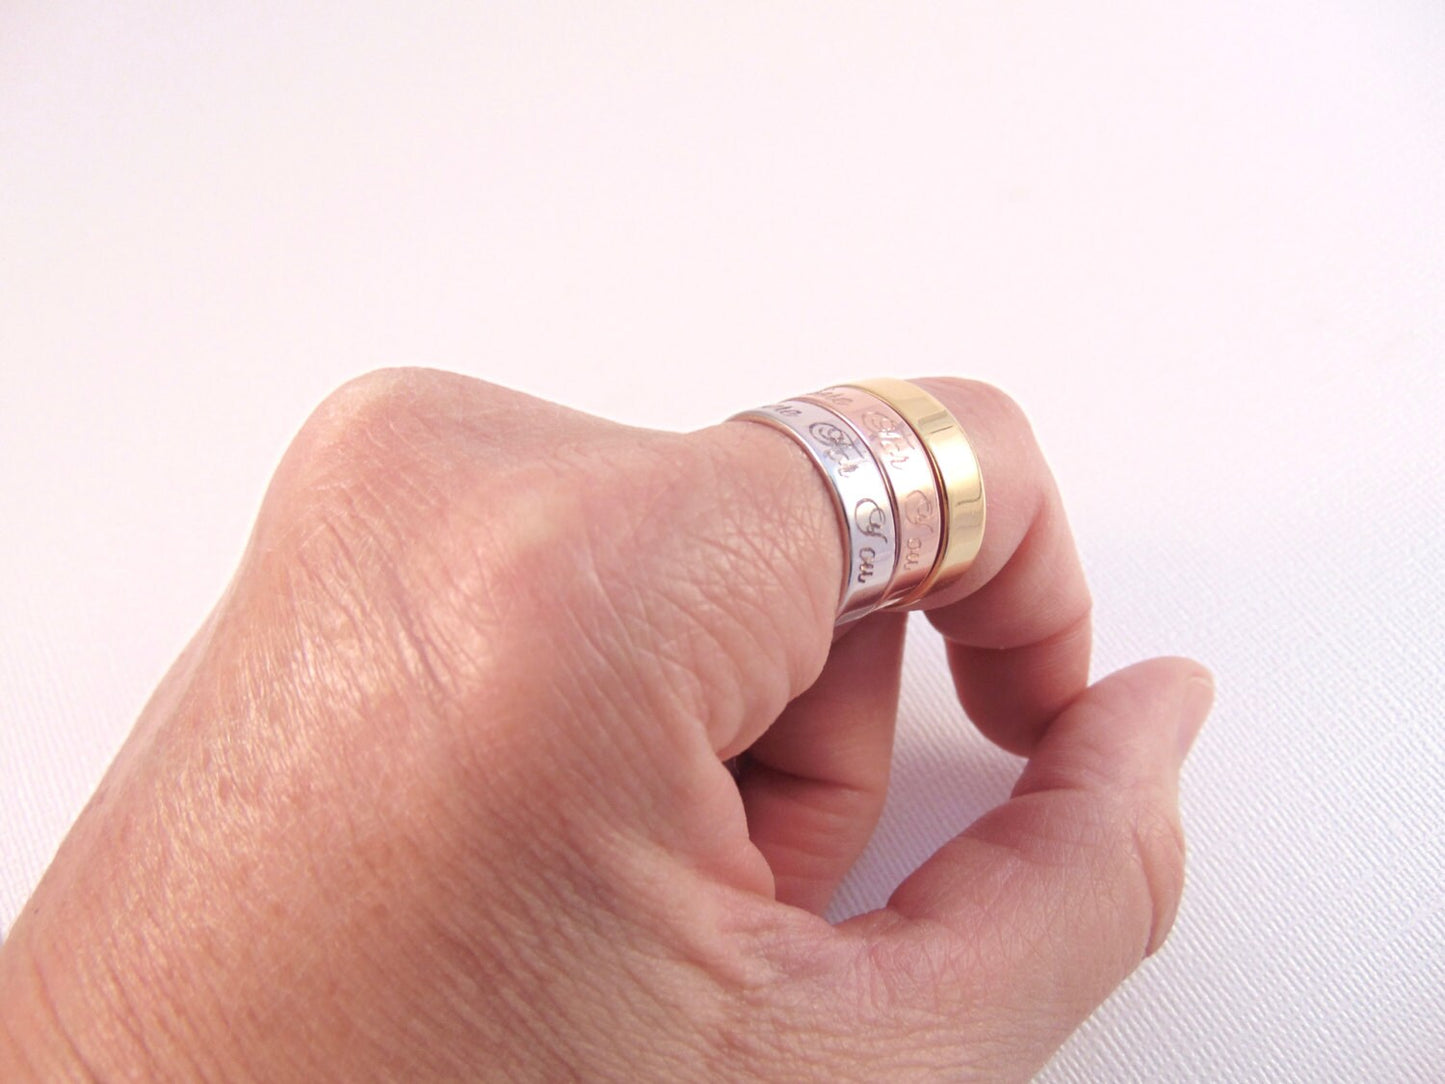 Anillo de nombre personalizado Anillo grabado apilable anillo de madre ajustable Anillo de nombre de niño Anillo de mensaje personalizado joyería estampada a mano inspiradora